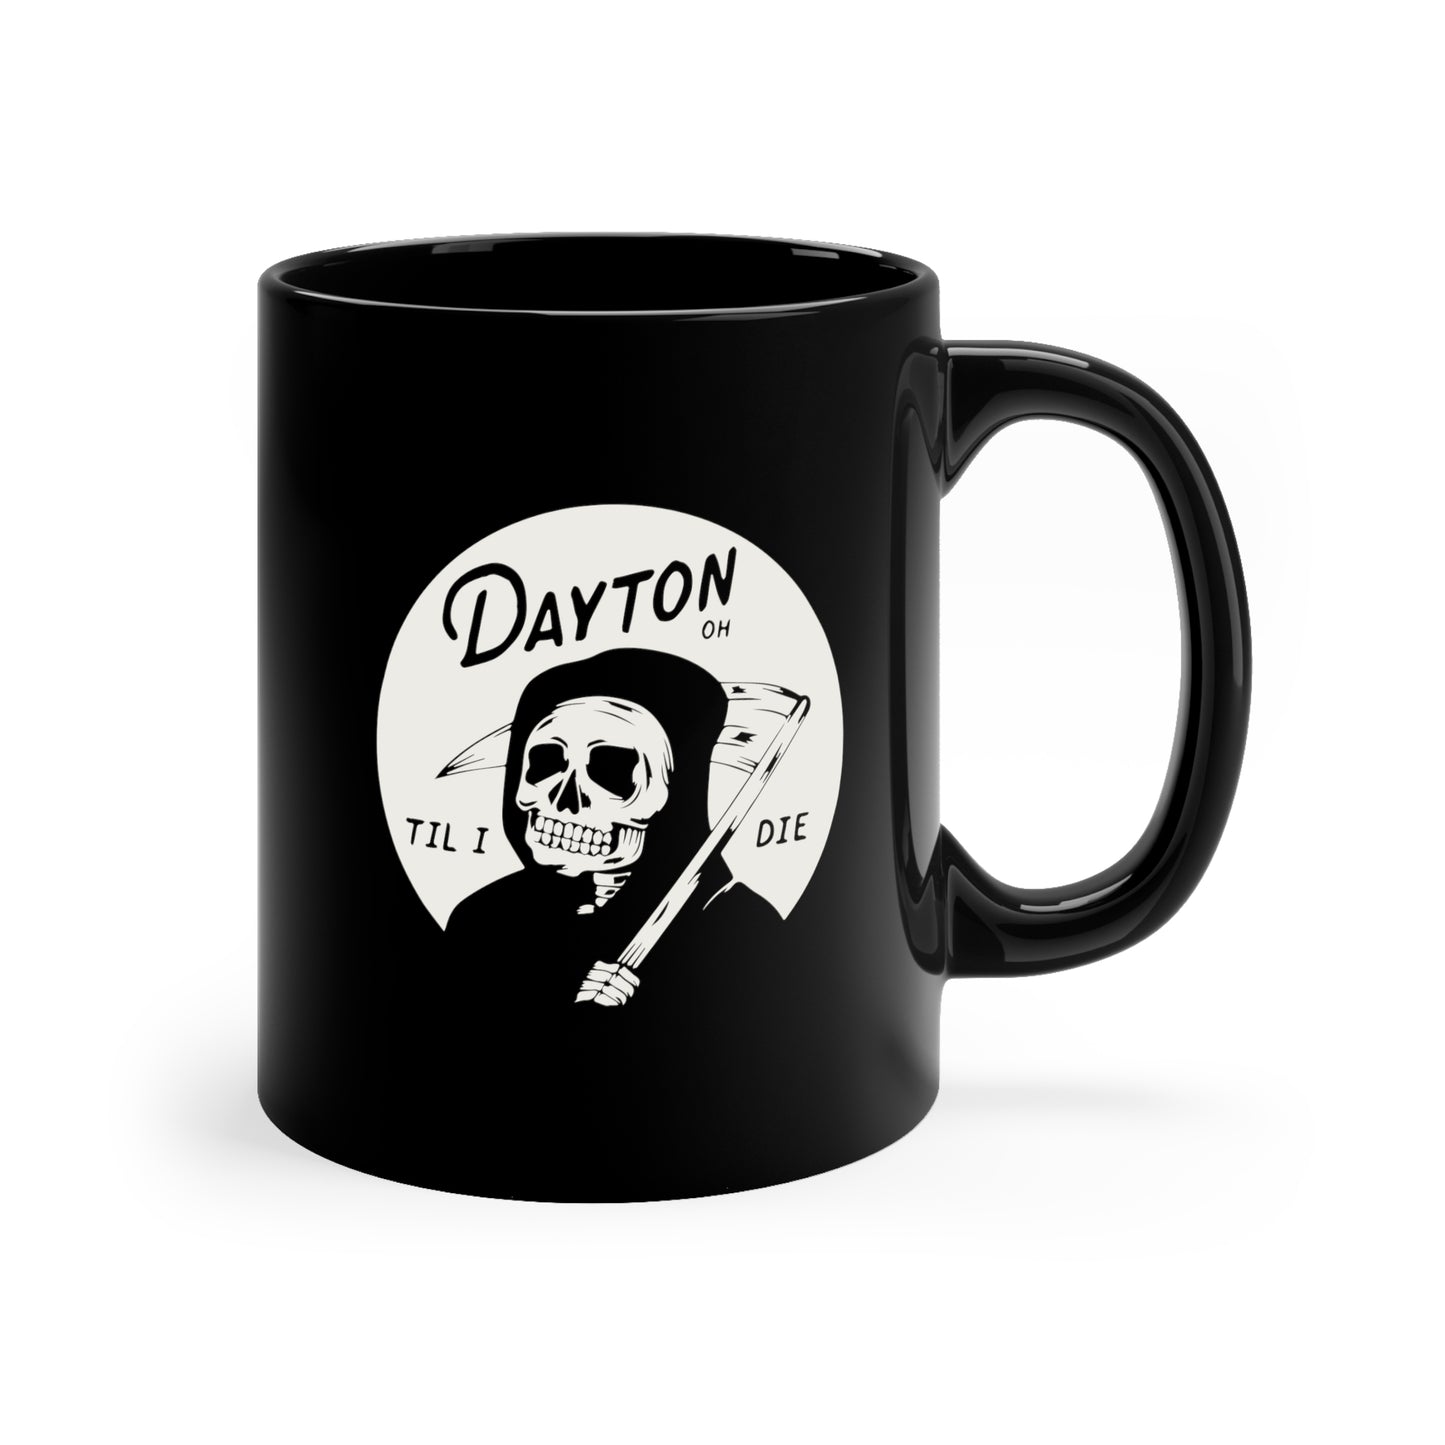 'Dayton Til I Die' Reaper Mug